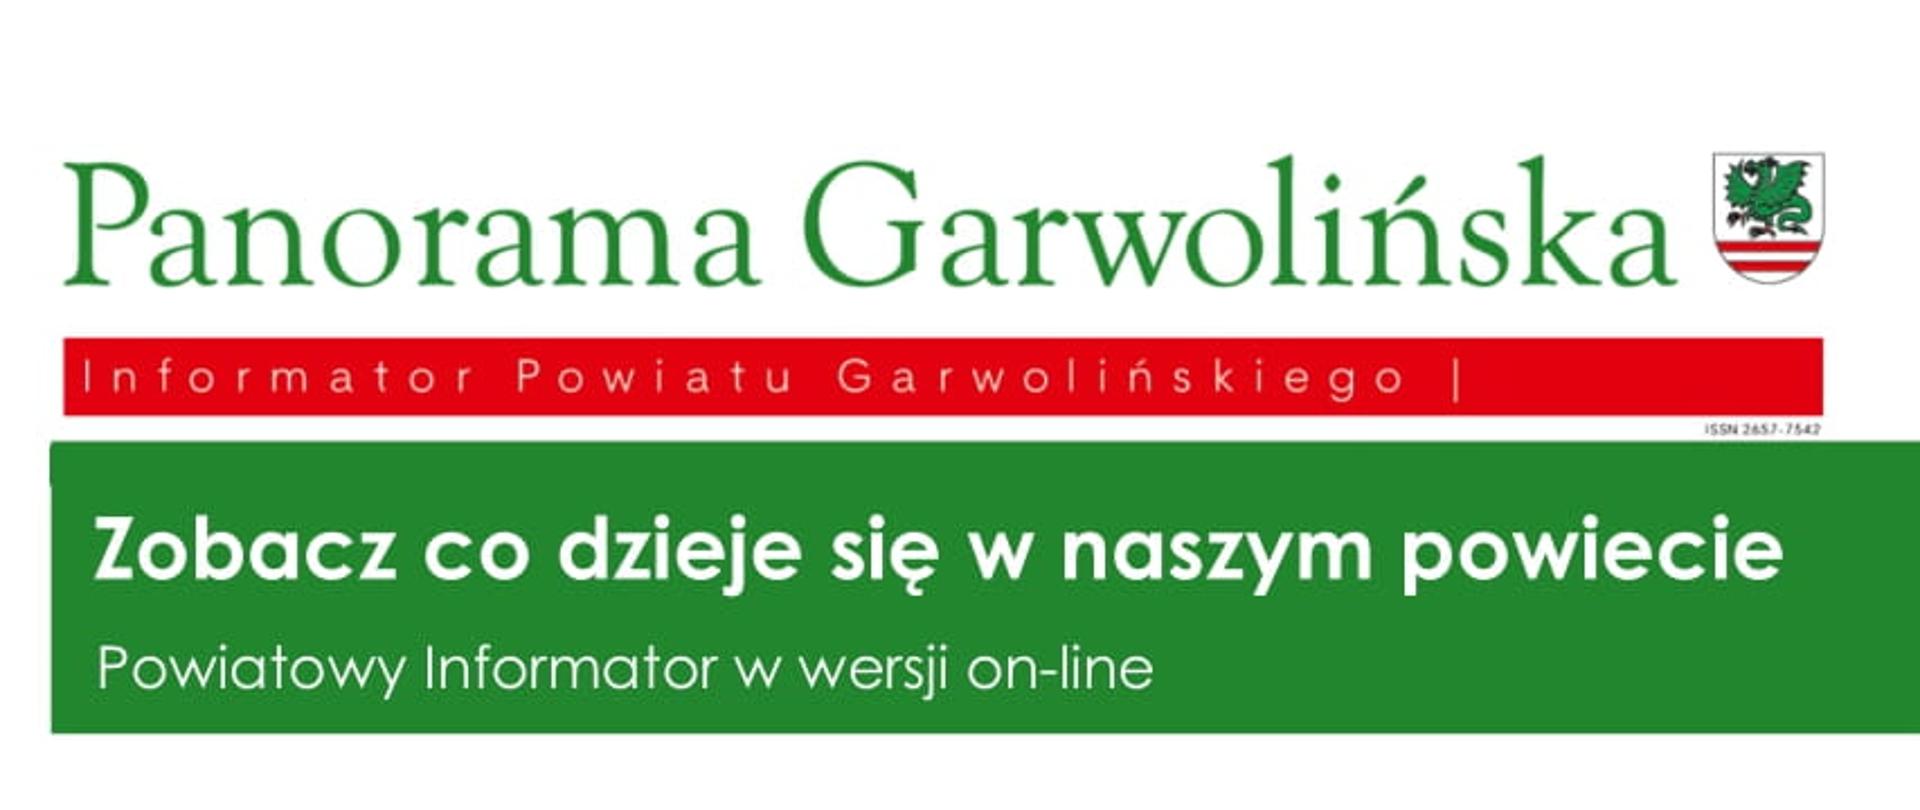 Panorama Garwolińska - Informator Powiatu Garwolińskiego 